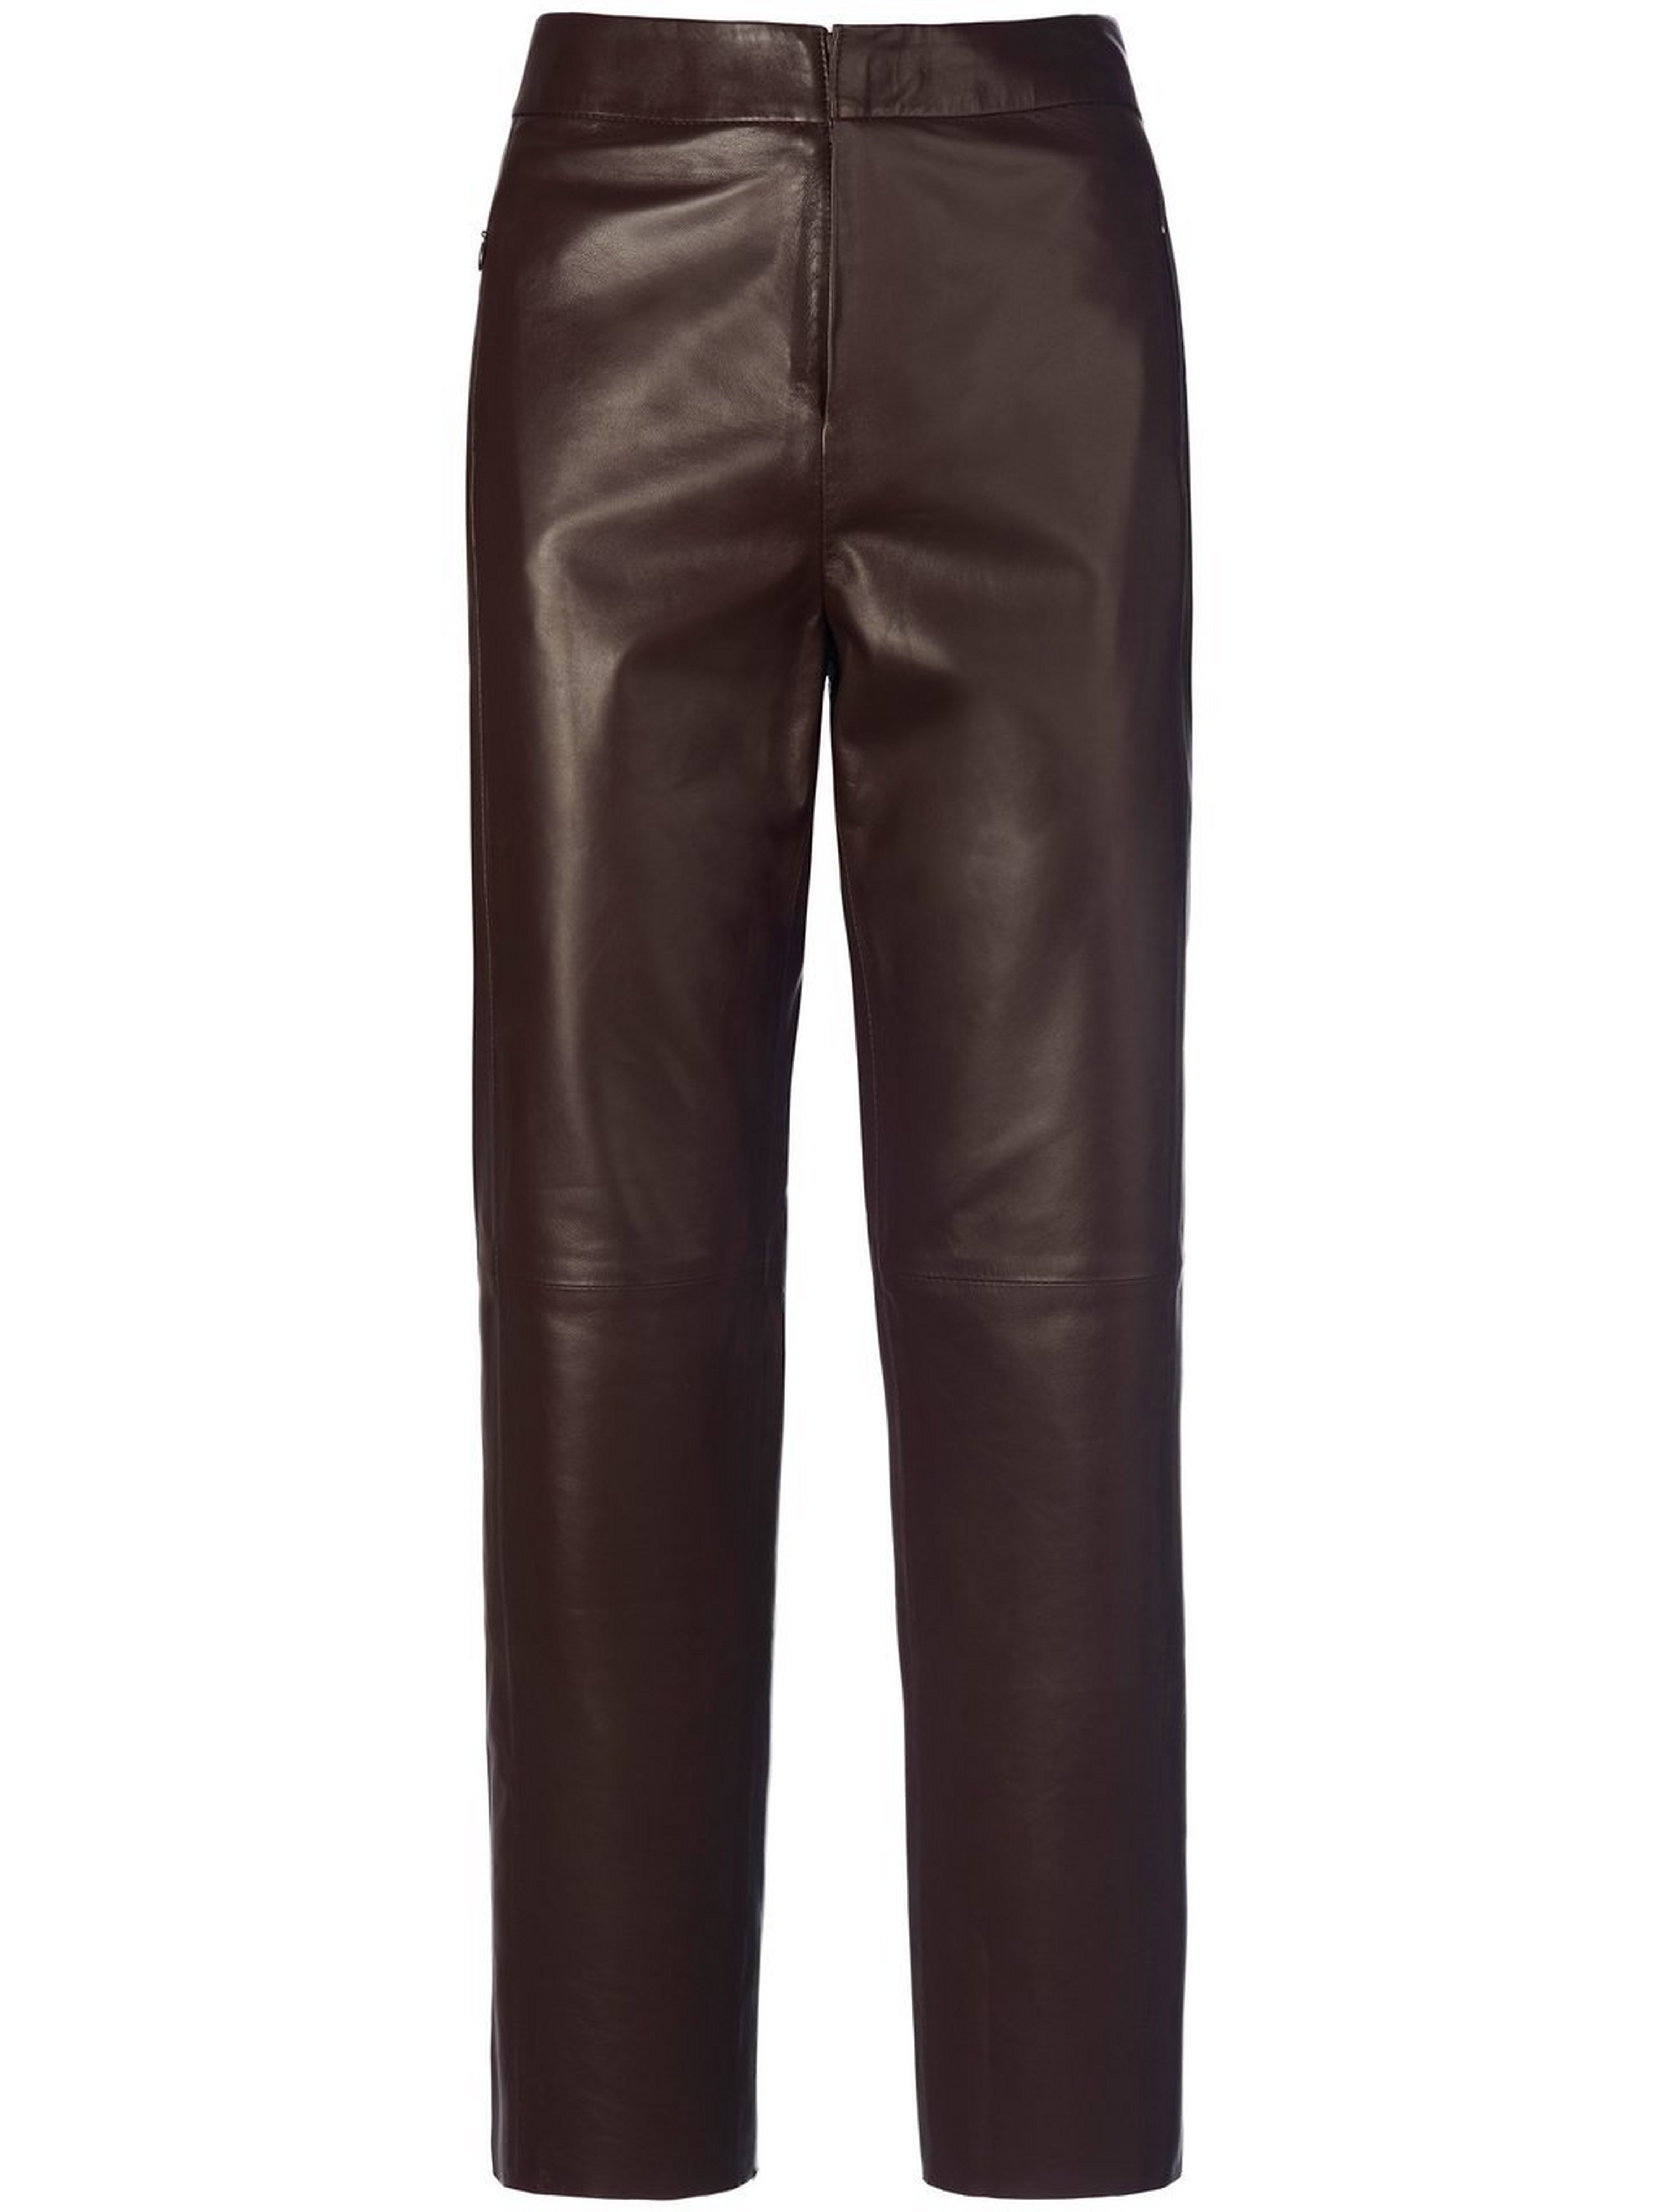 Le pantalon longueur chevilles cuir nappa d’agn  portray berlin rouge taille 42